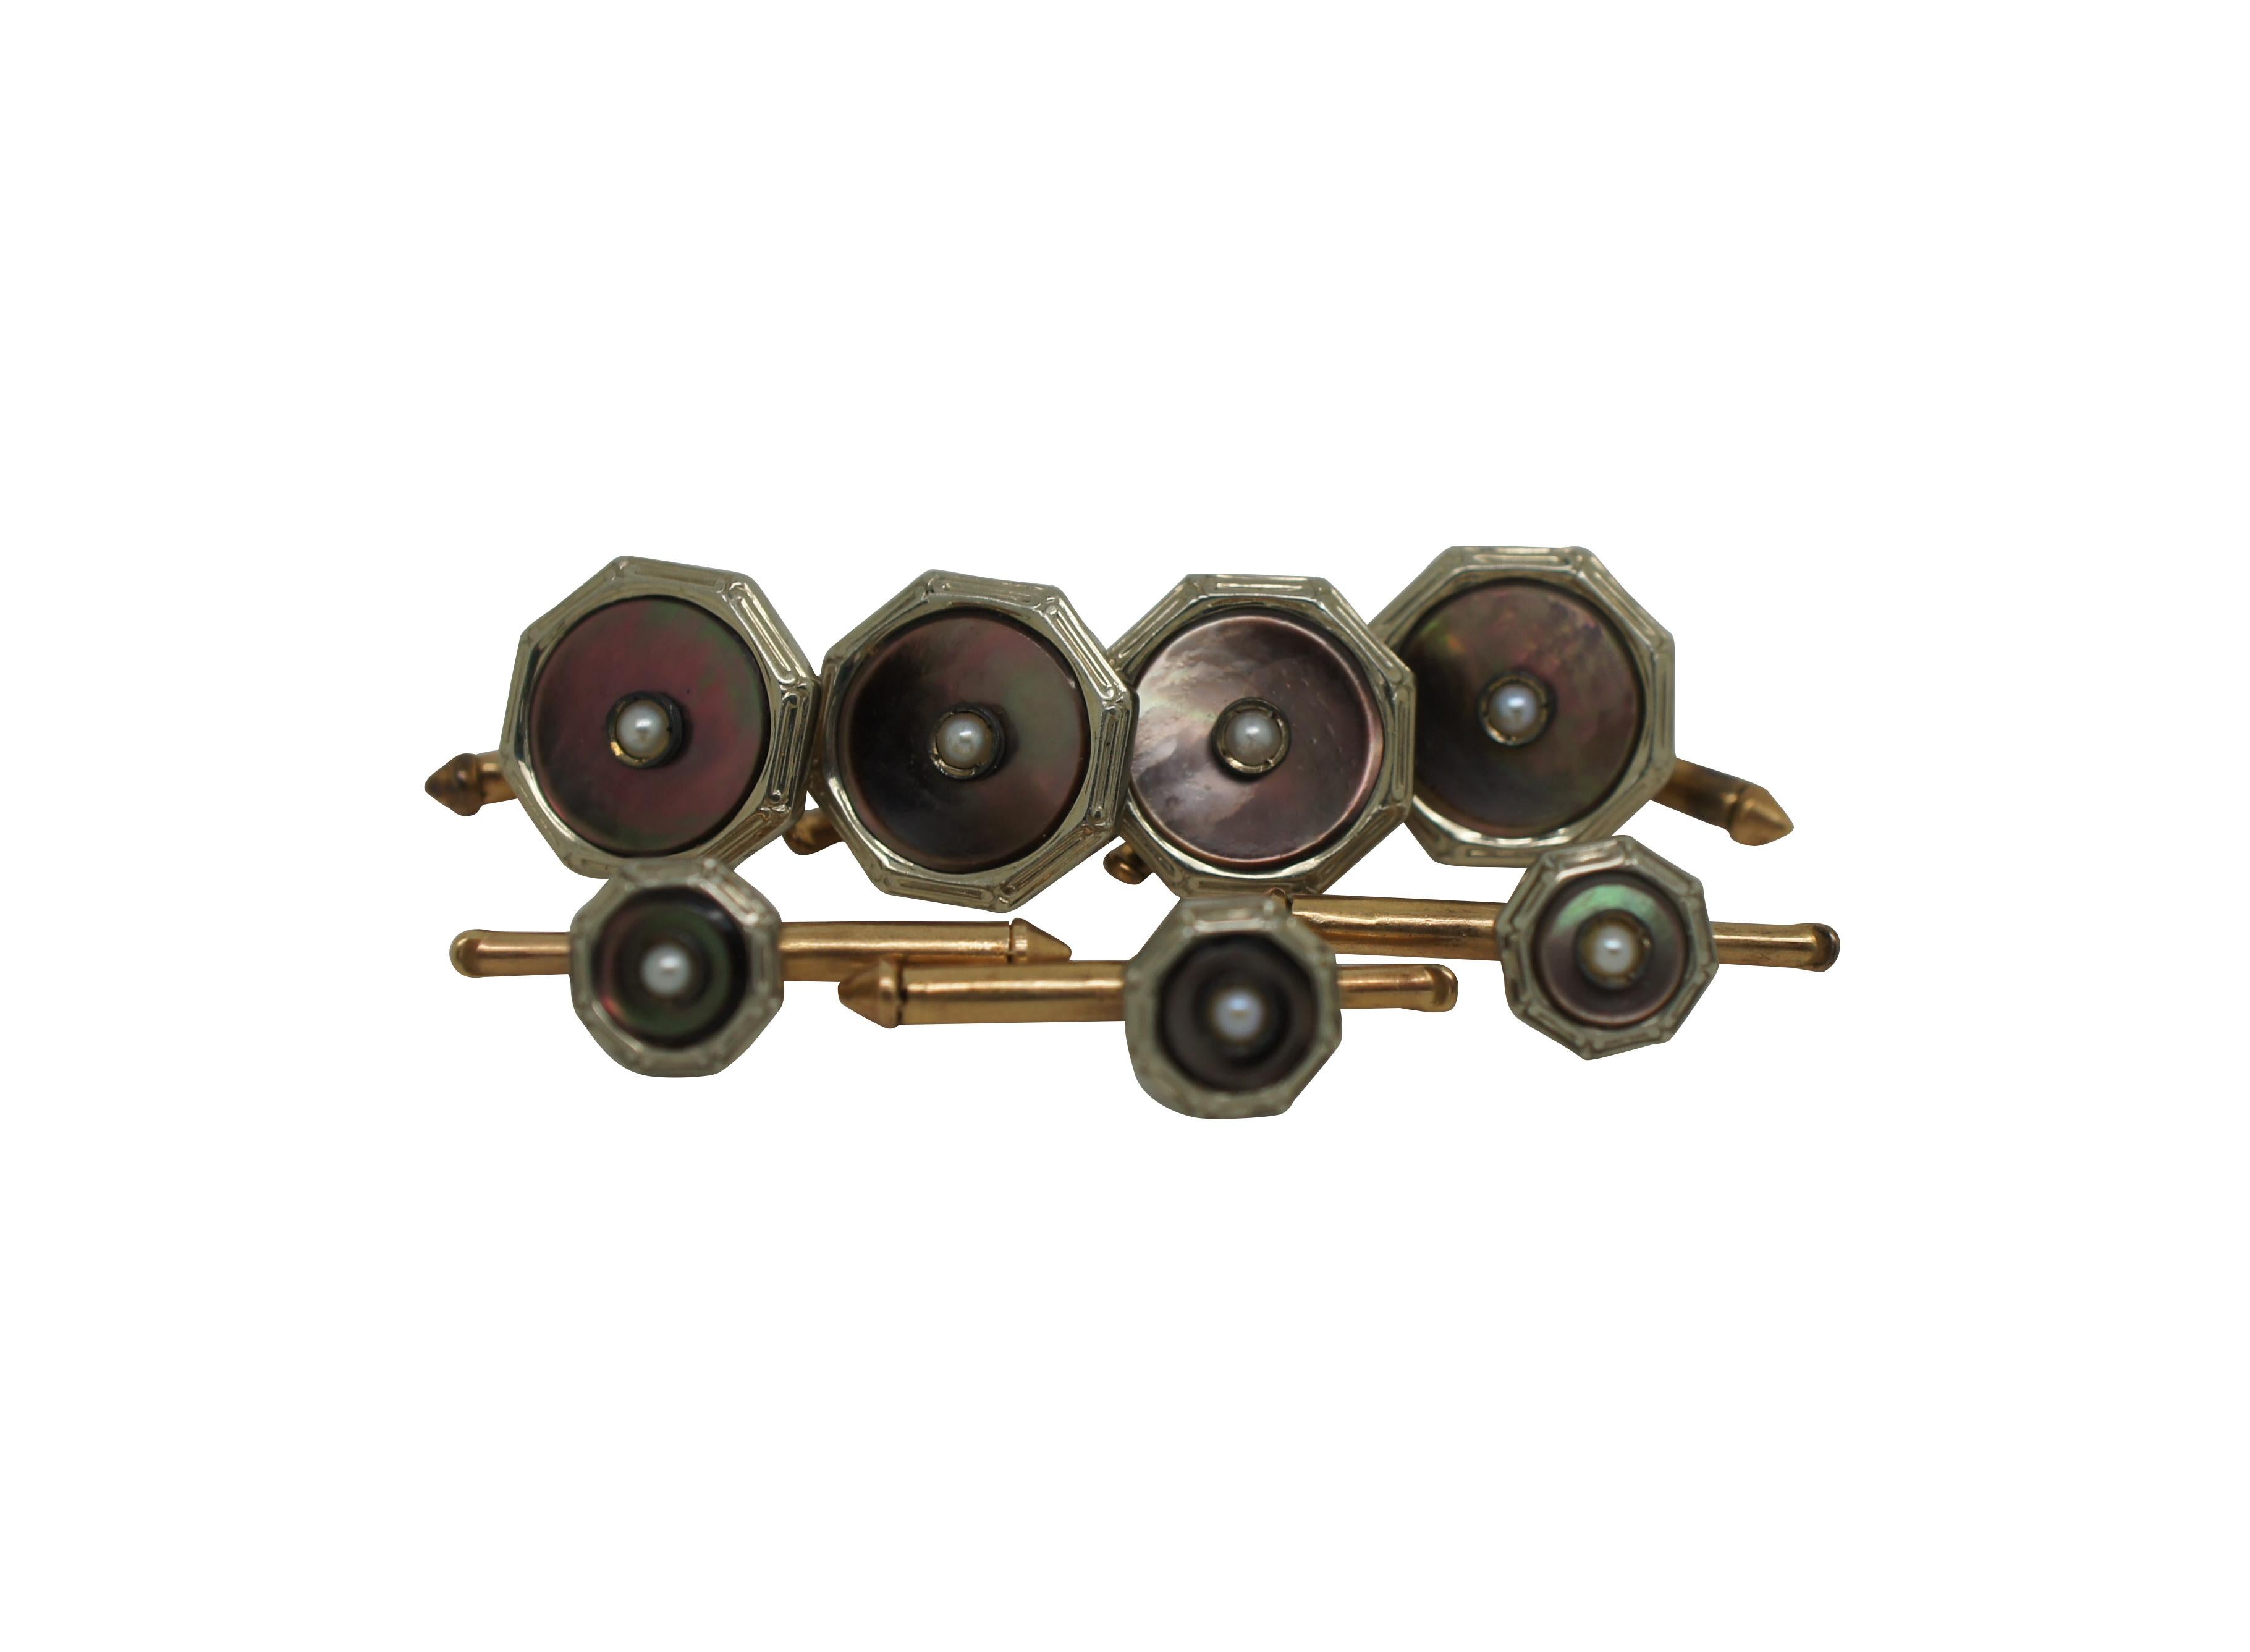 Boutons de manchette et boutons d'oreilles vintage en or 10k et nacre, de forme octogonale avec des perles centrales.

Dimensions :
Boutons de manchette - 0,5